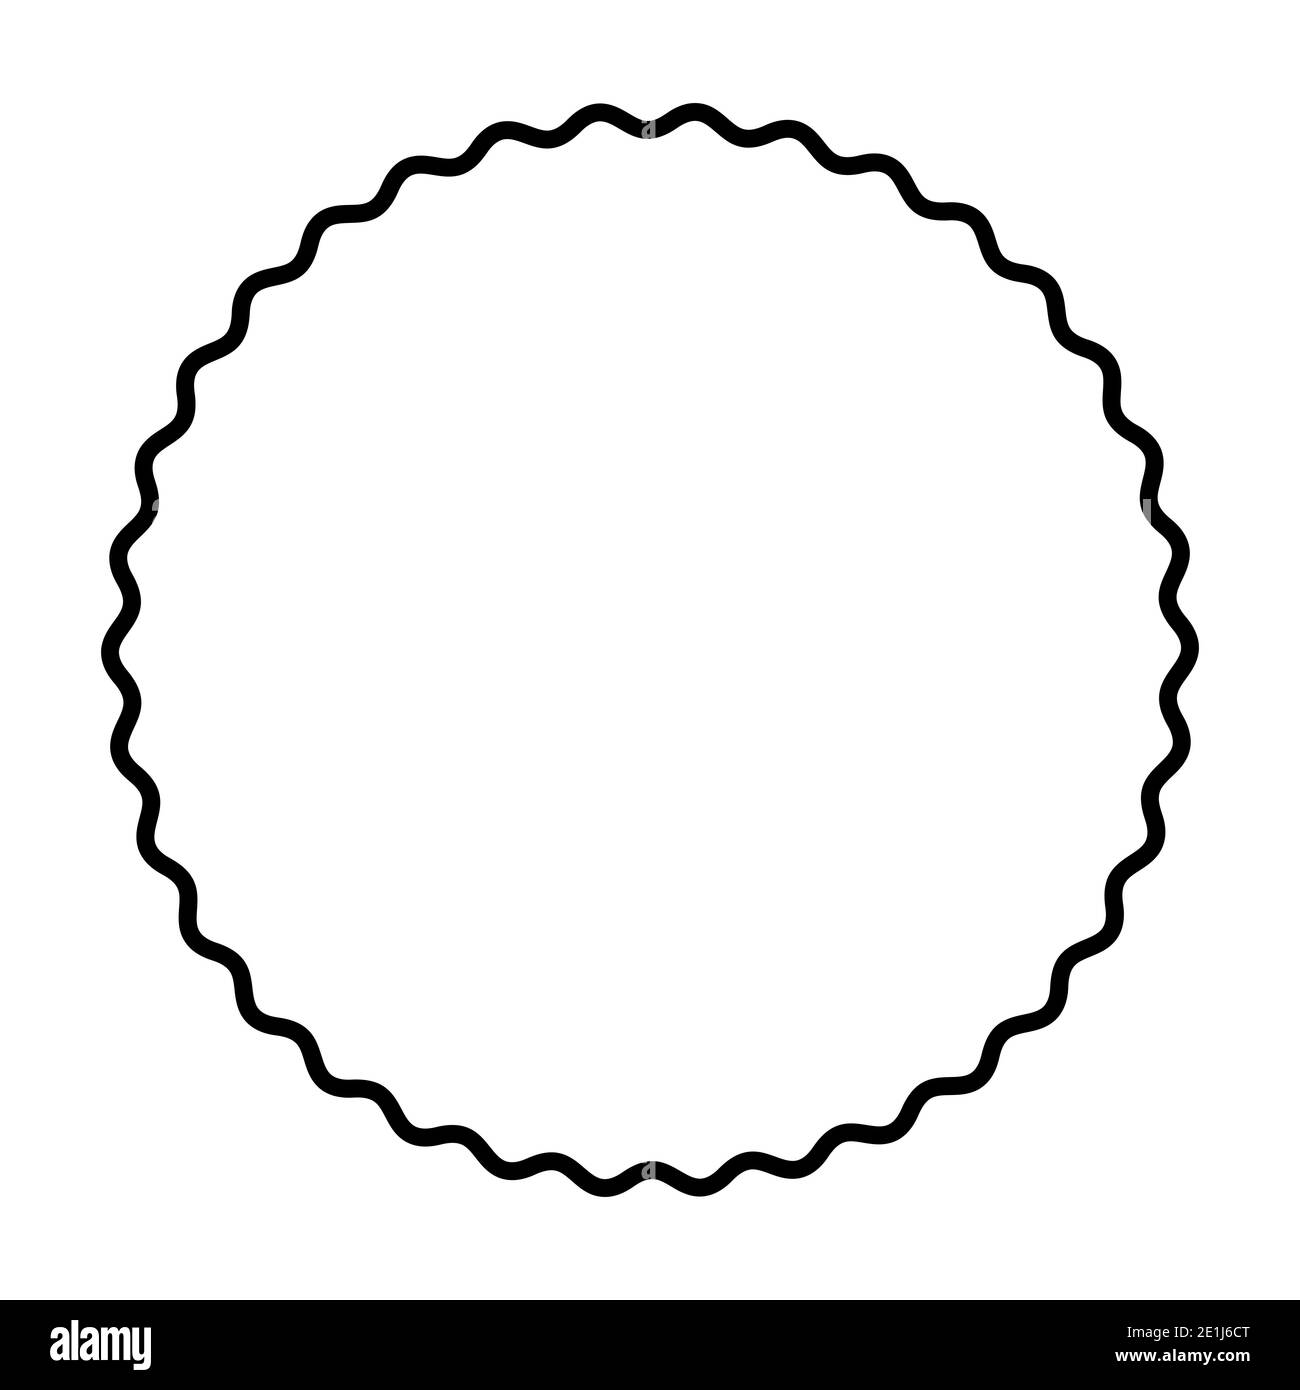 Eine fett gewellte Linie, die einen schwarzen Kreis bildet. Kreisrahmen, hergestellt durch eine schwarze Serpentinenlinie. Schlangenförmiger, runder Rahmen, dekorativer Rahmen. Stockfoto